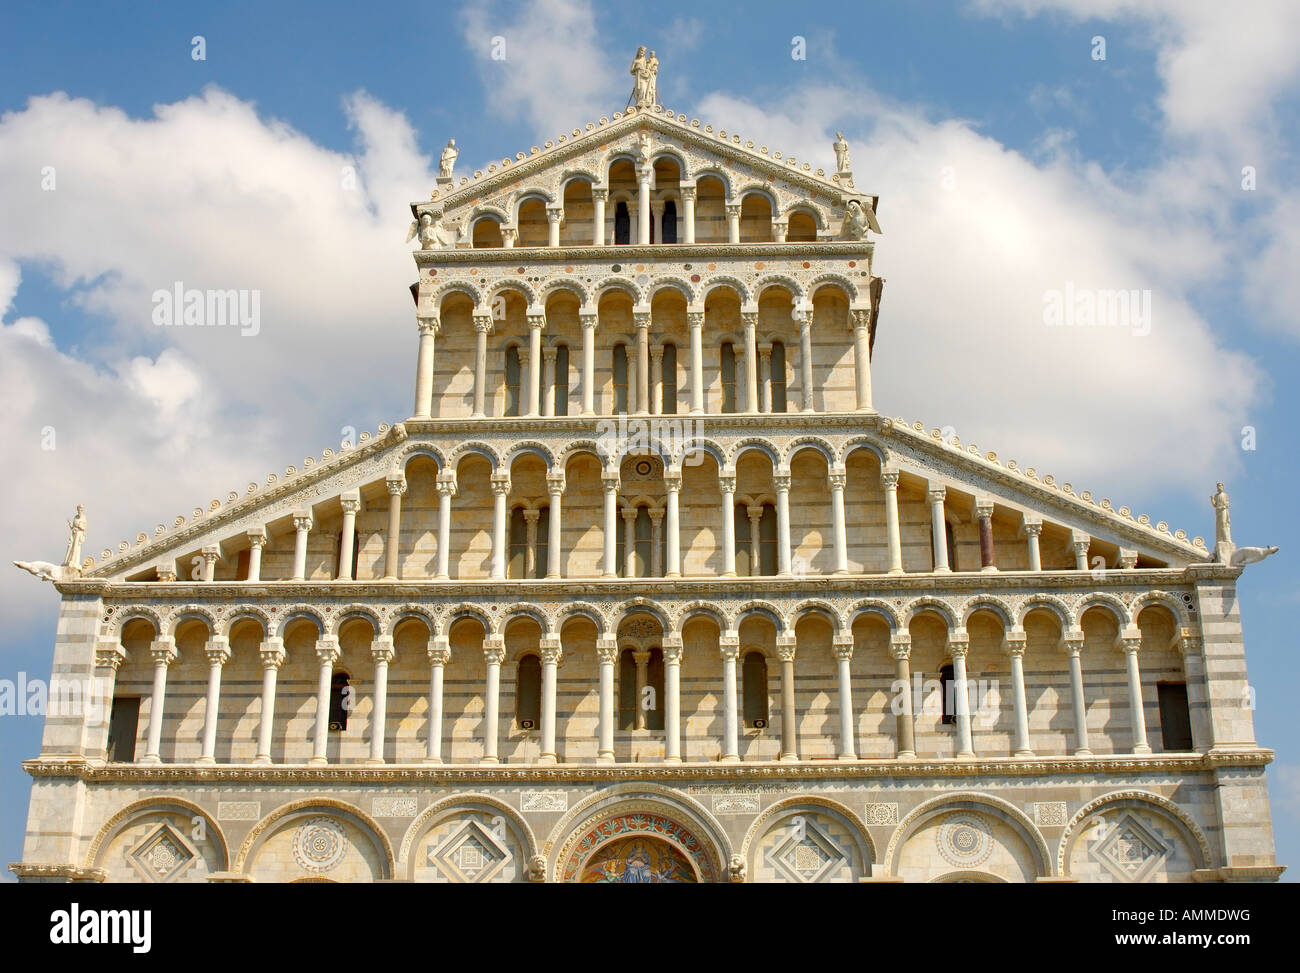 Blick auf den Dom von Pisa romanische Arkaden an der Fassade des Doms. Piazza del Miracoli Pisa Italien Stockfoto